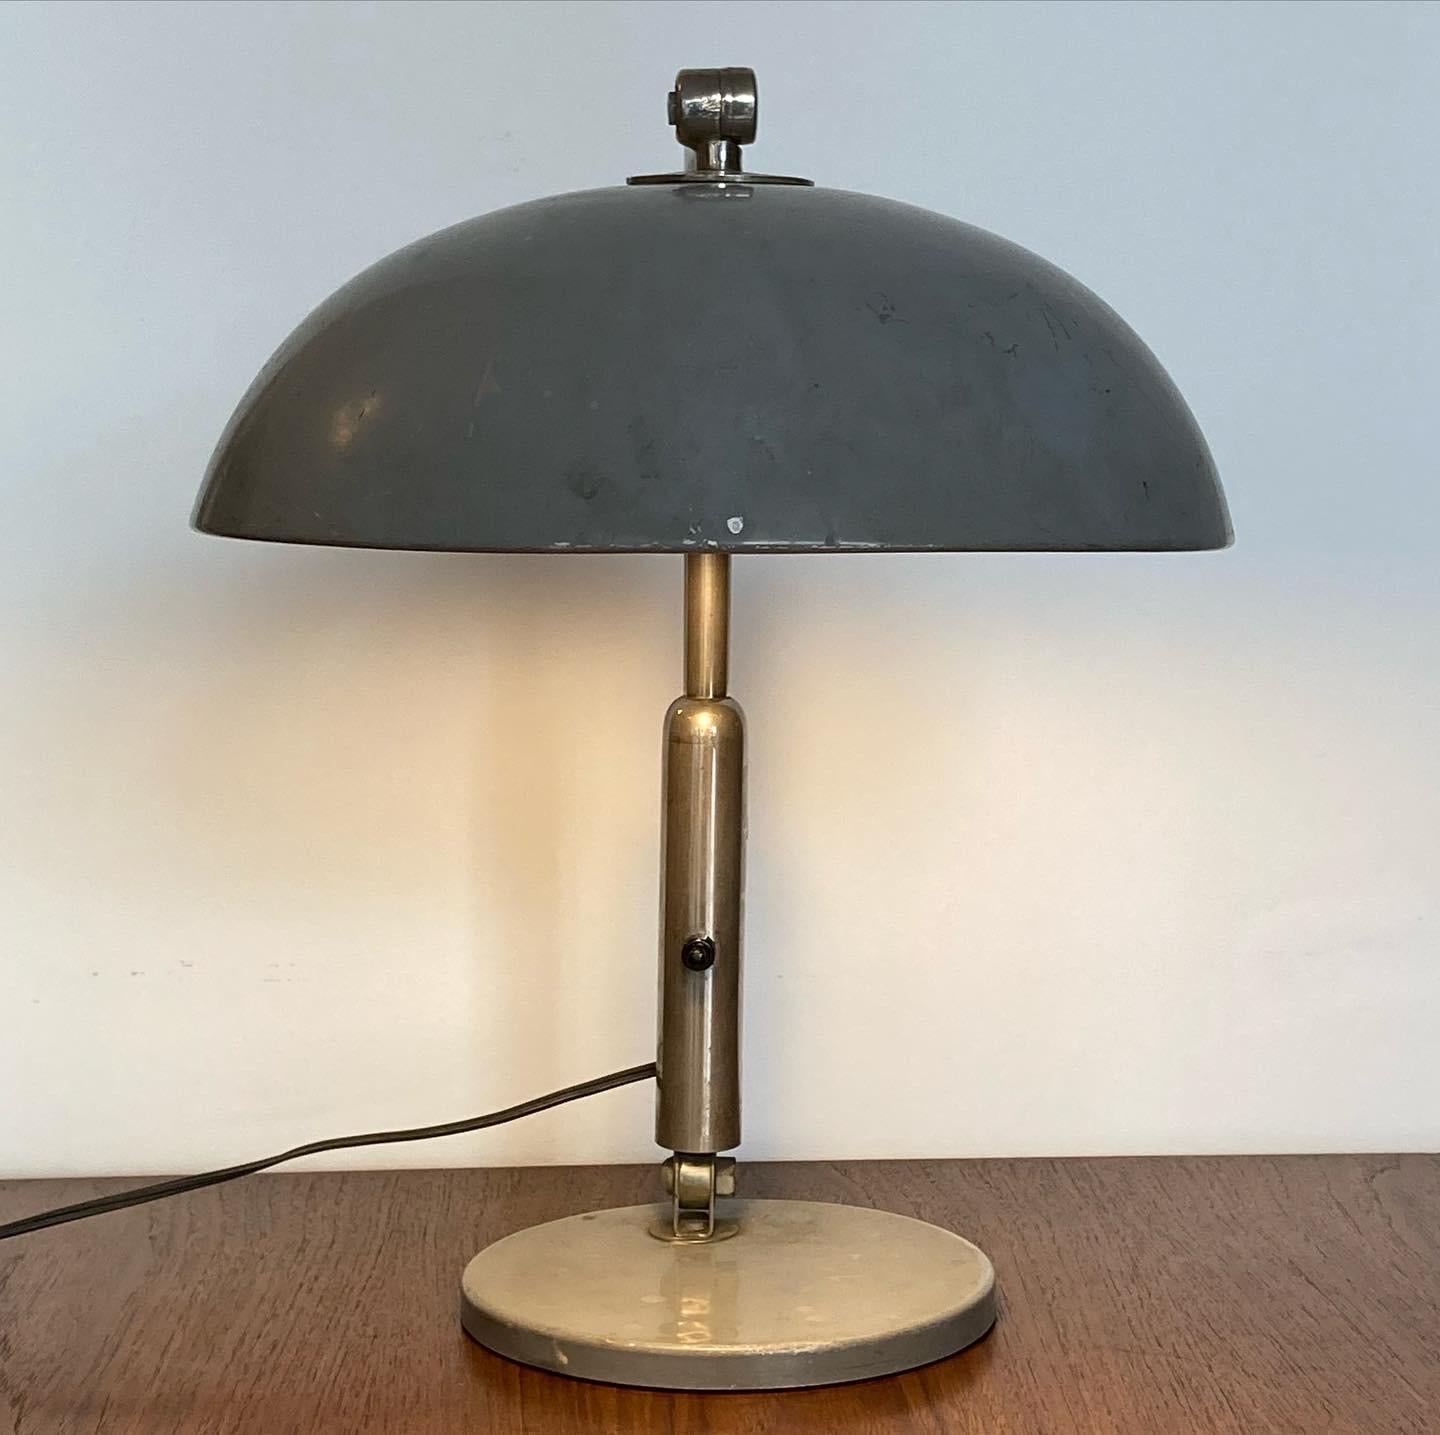 Magnifique lampe de bureau conçue en 1932 par H. Busquet et fabriquée par Hala Zeist aux Pays-Bas dans les années 1950. La forte patine montre comment la lampe a été aimée et utilisée par les propriétaires précédents, toujours en grand état avec